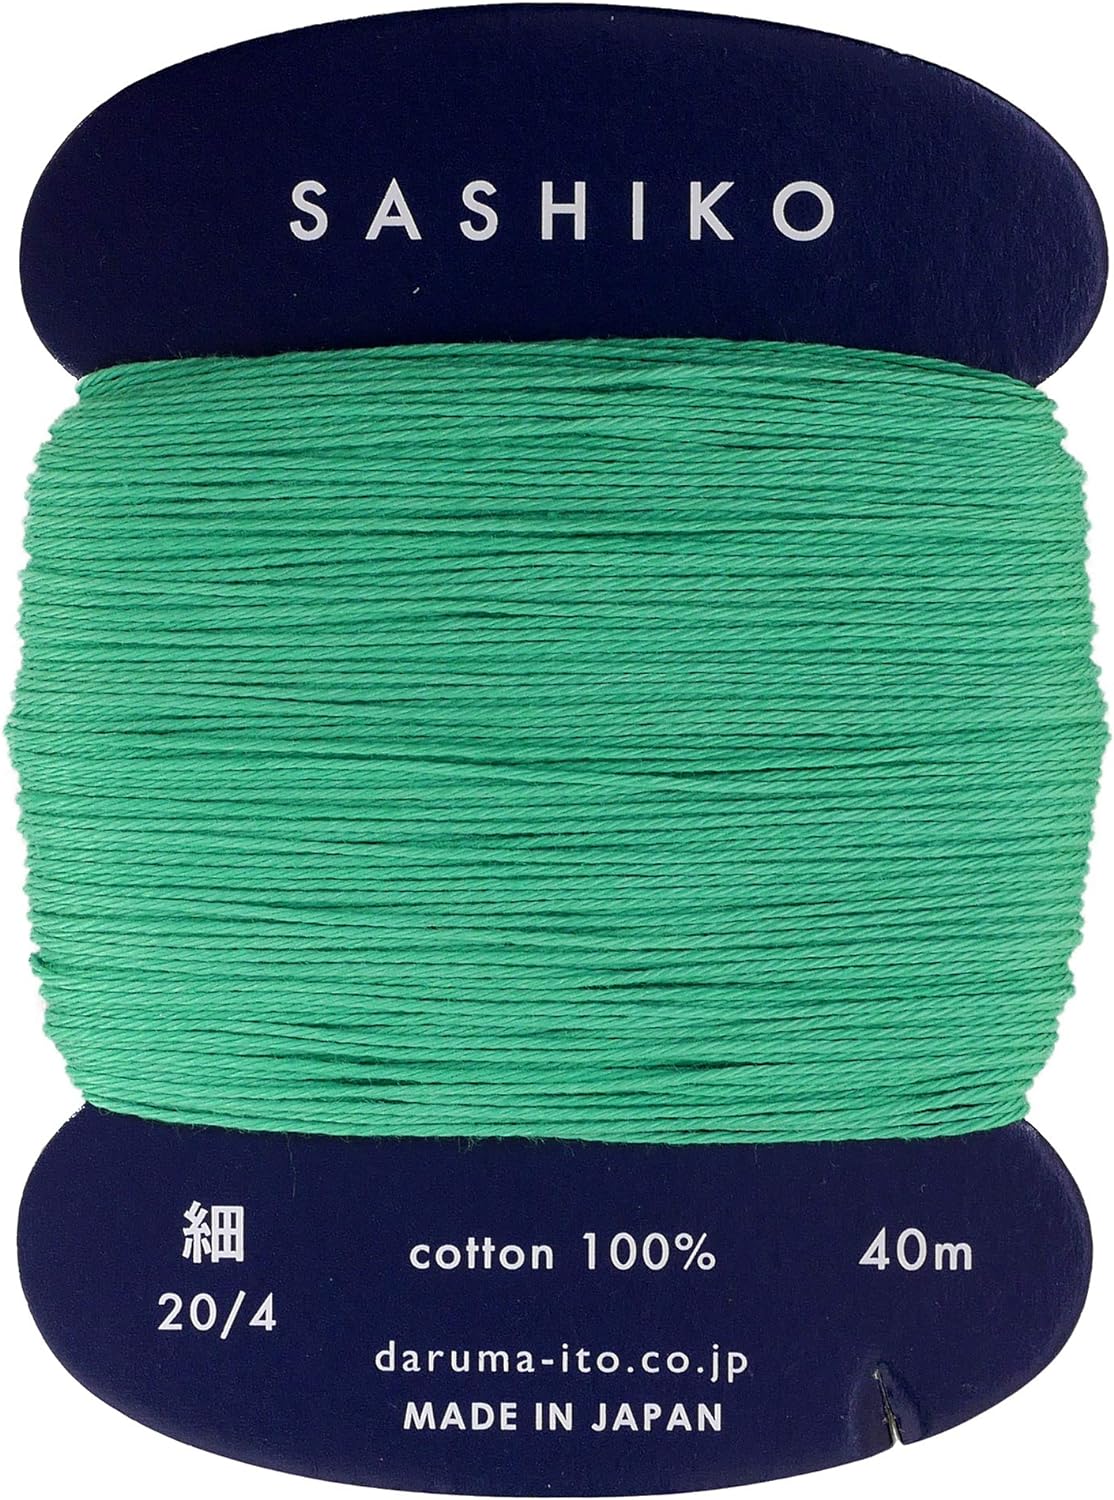 Yokota Daruma Sashiko Fine Thread 01-2400 (Cardboard Ver.)